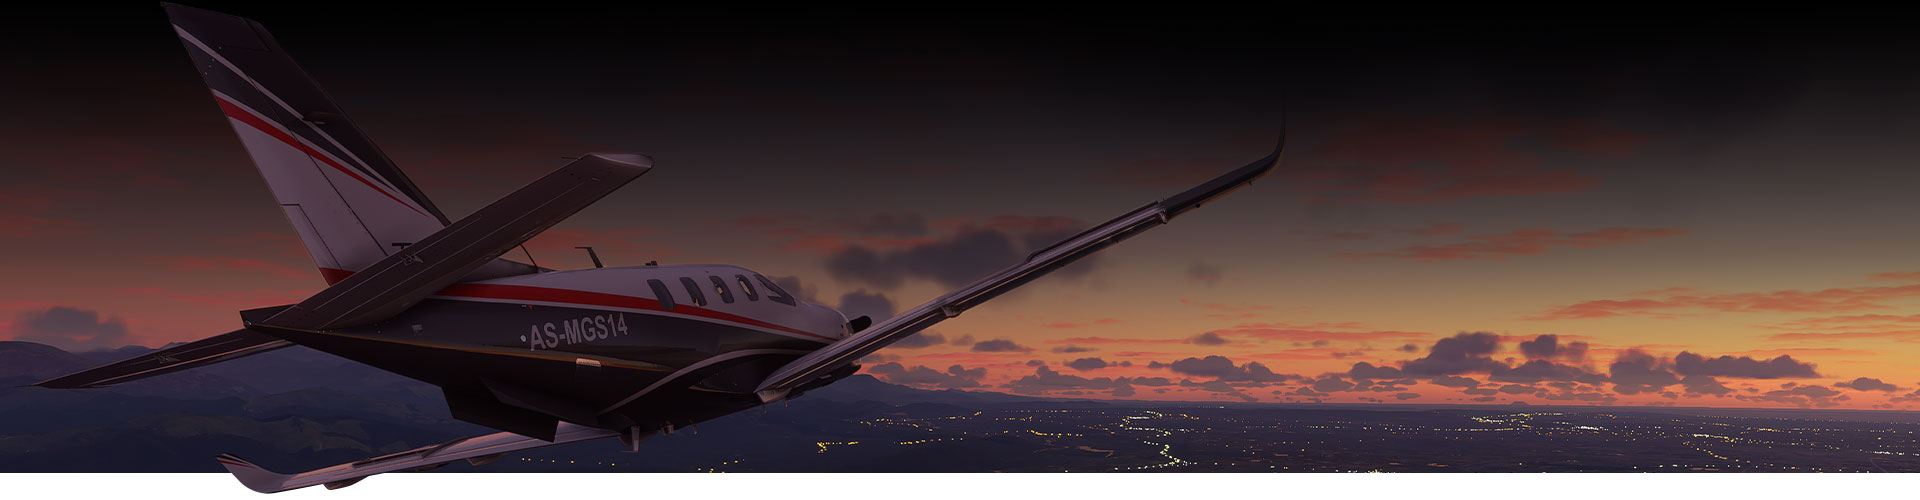 Avion de Microsoft Flight Simulator survolant une ville au coucher du soleil